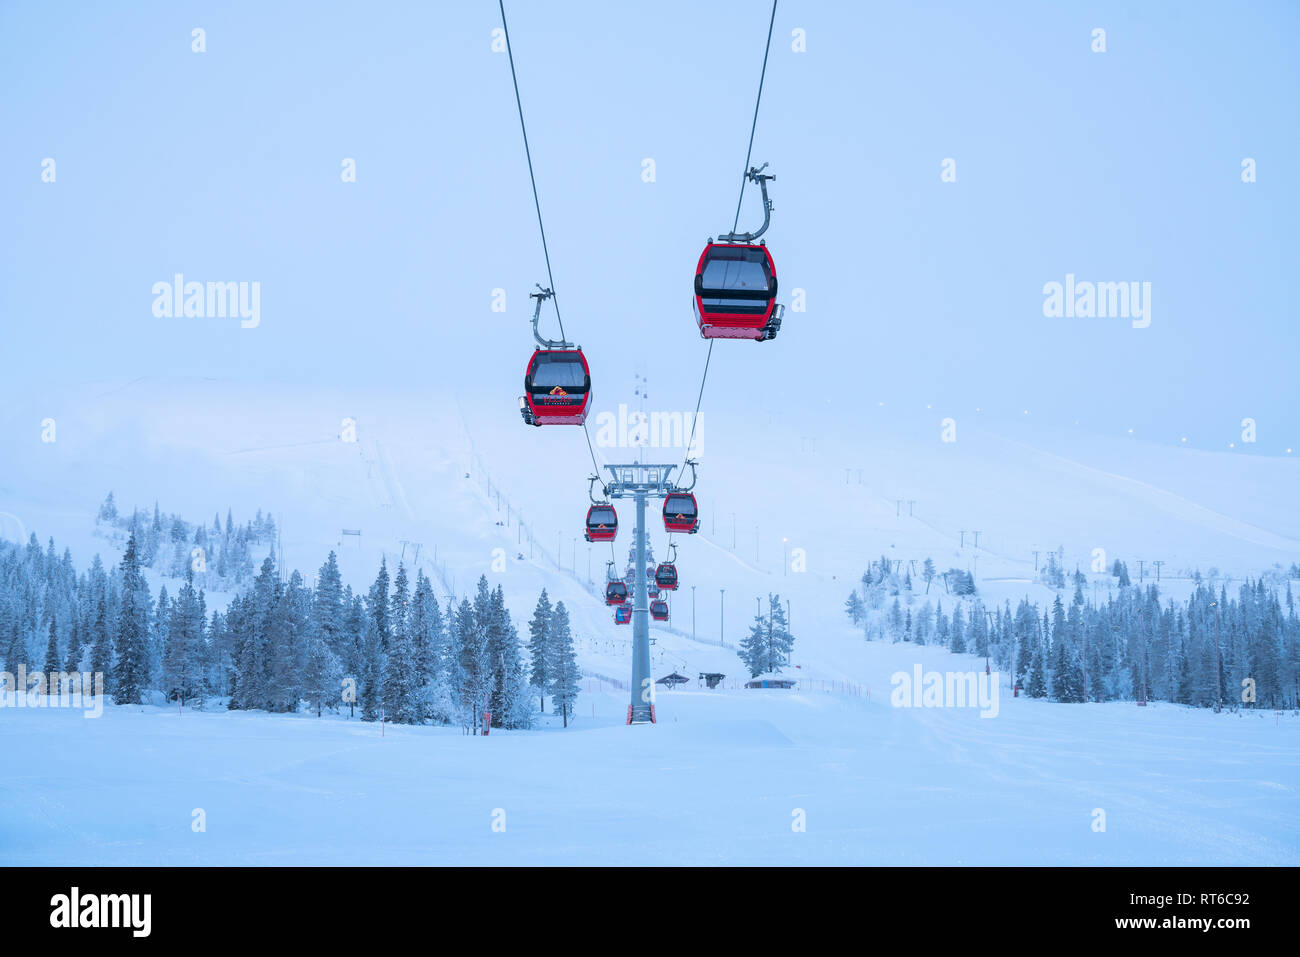 Ylläs ski resort and gondola lift with people in them in Kolari and Äkäslompolo, Finland Stock Photo